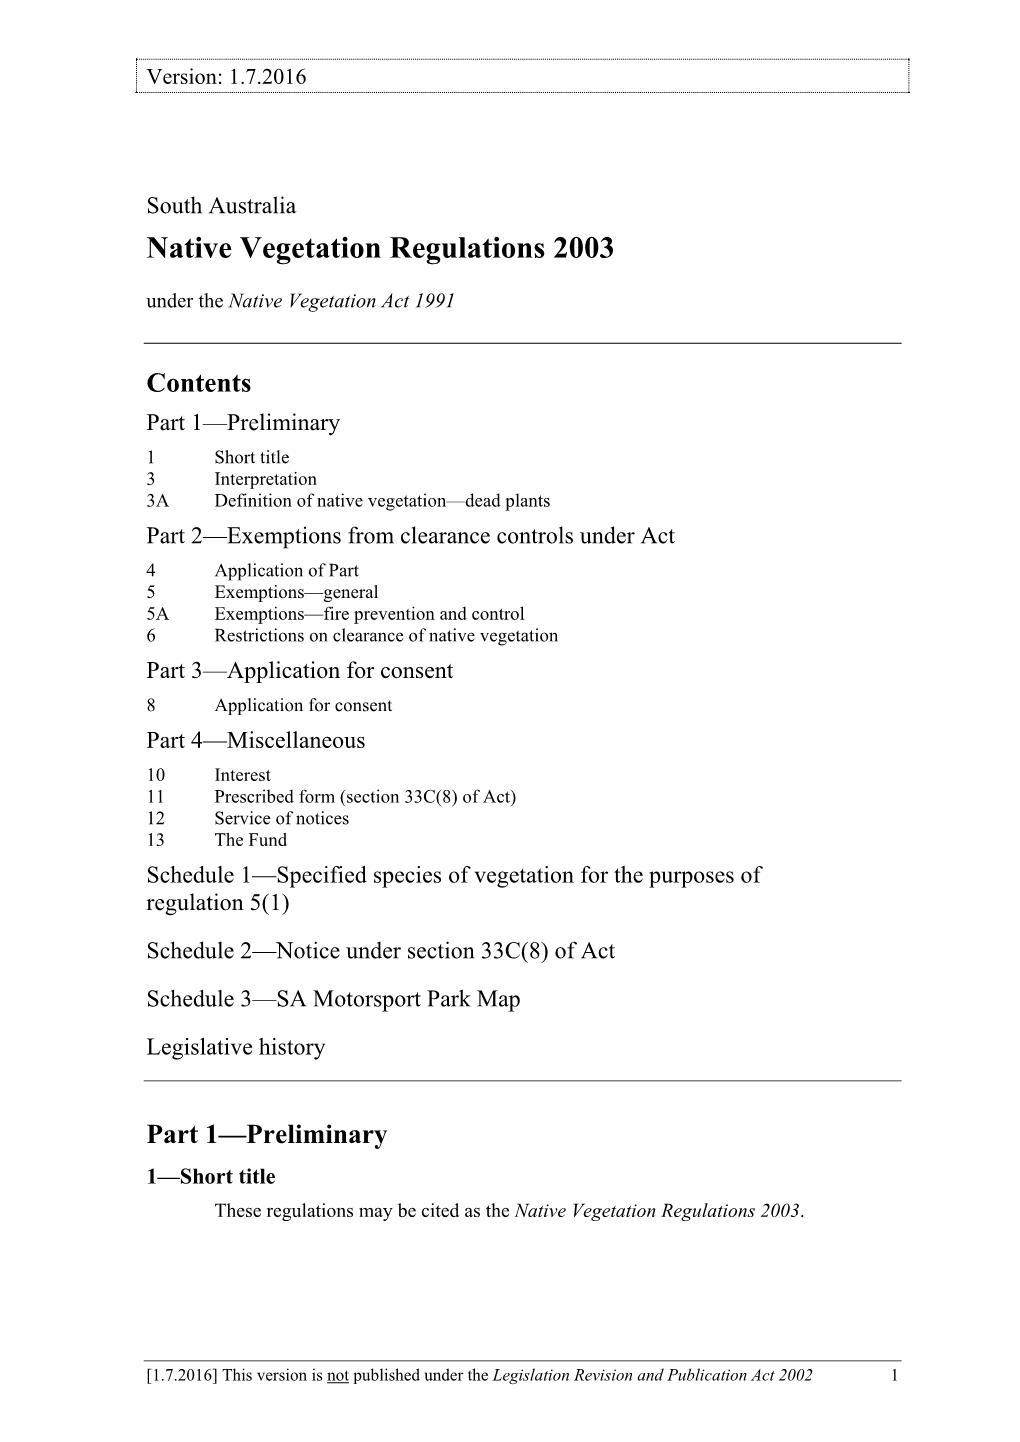 Native Vegetation Regulations 2003 Under the Native Vegetation Act 1991